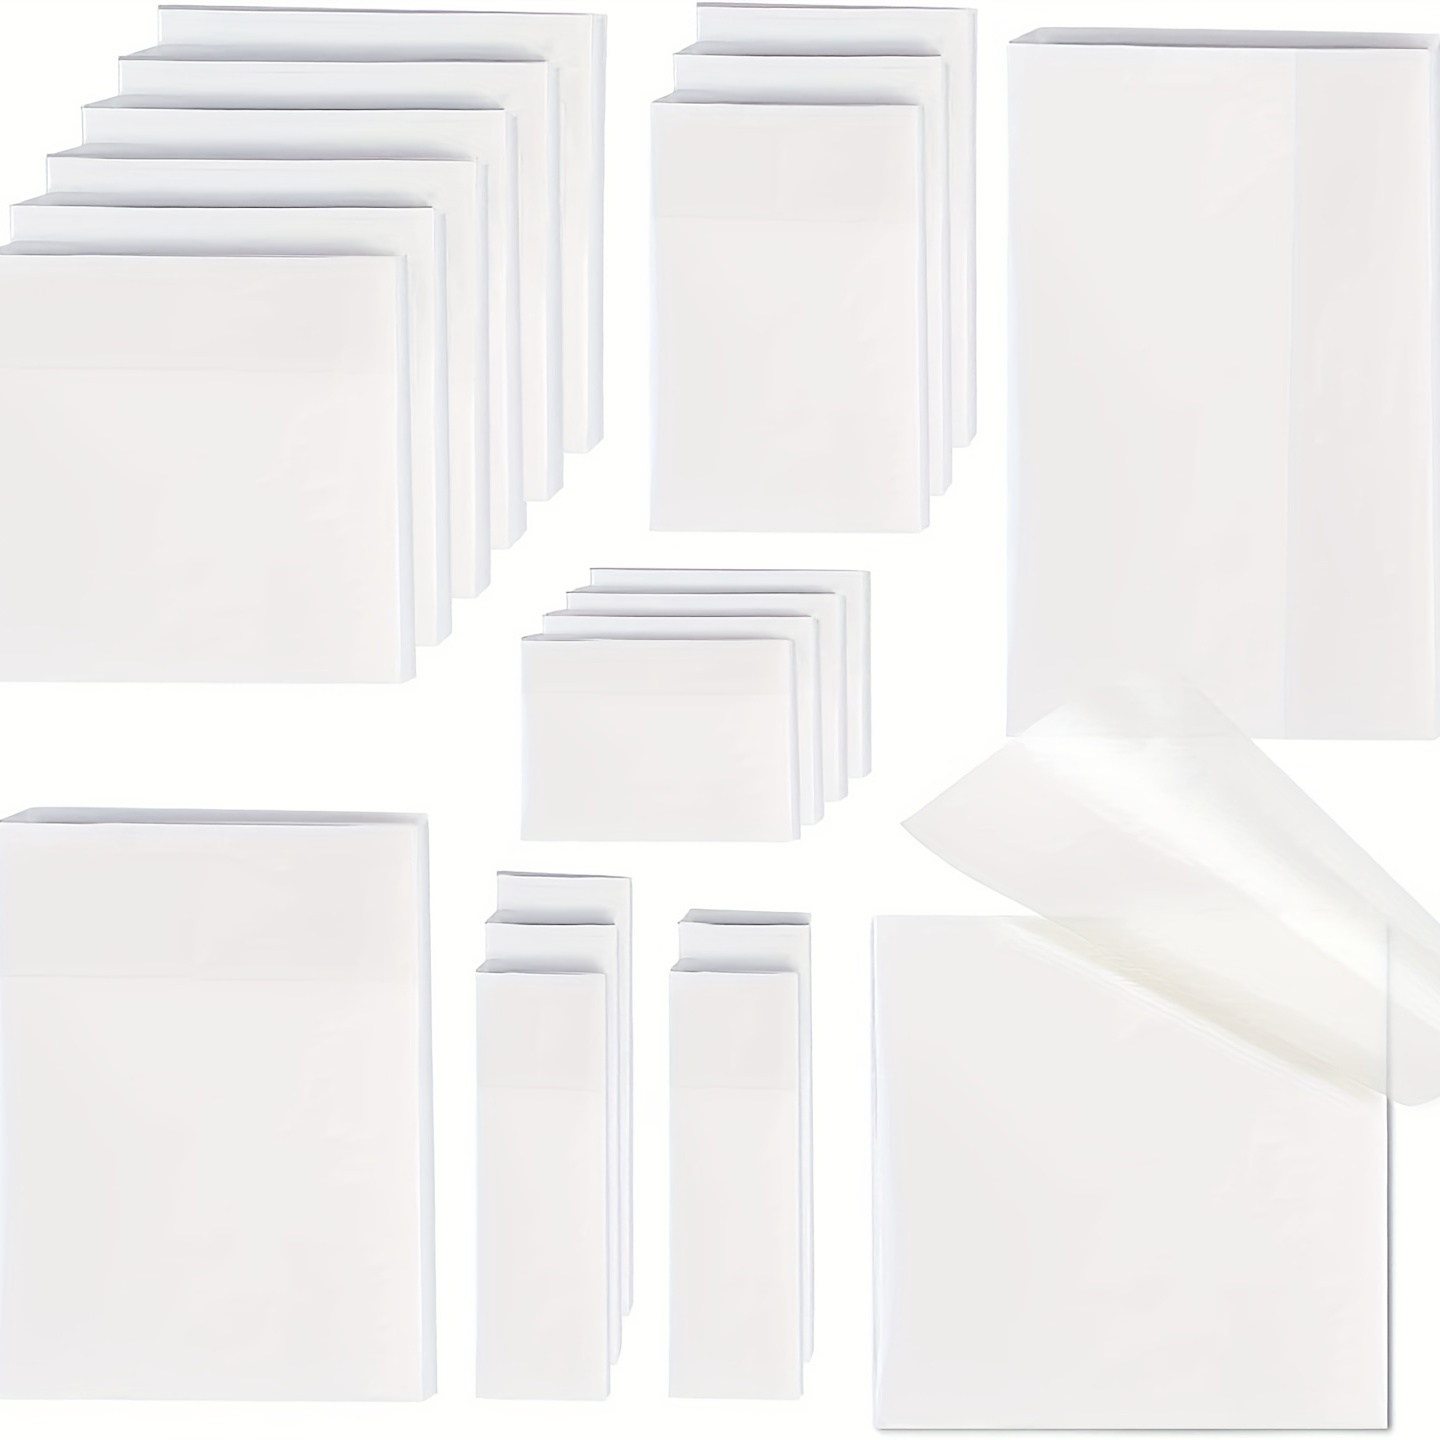  Papel adhesivo impermeable transparente para imprimir láser,  8.5 x 11 pulgadas, 25 hojas, solo para impresoras láser, etiquetas en línea  : Productos de Oficina